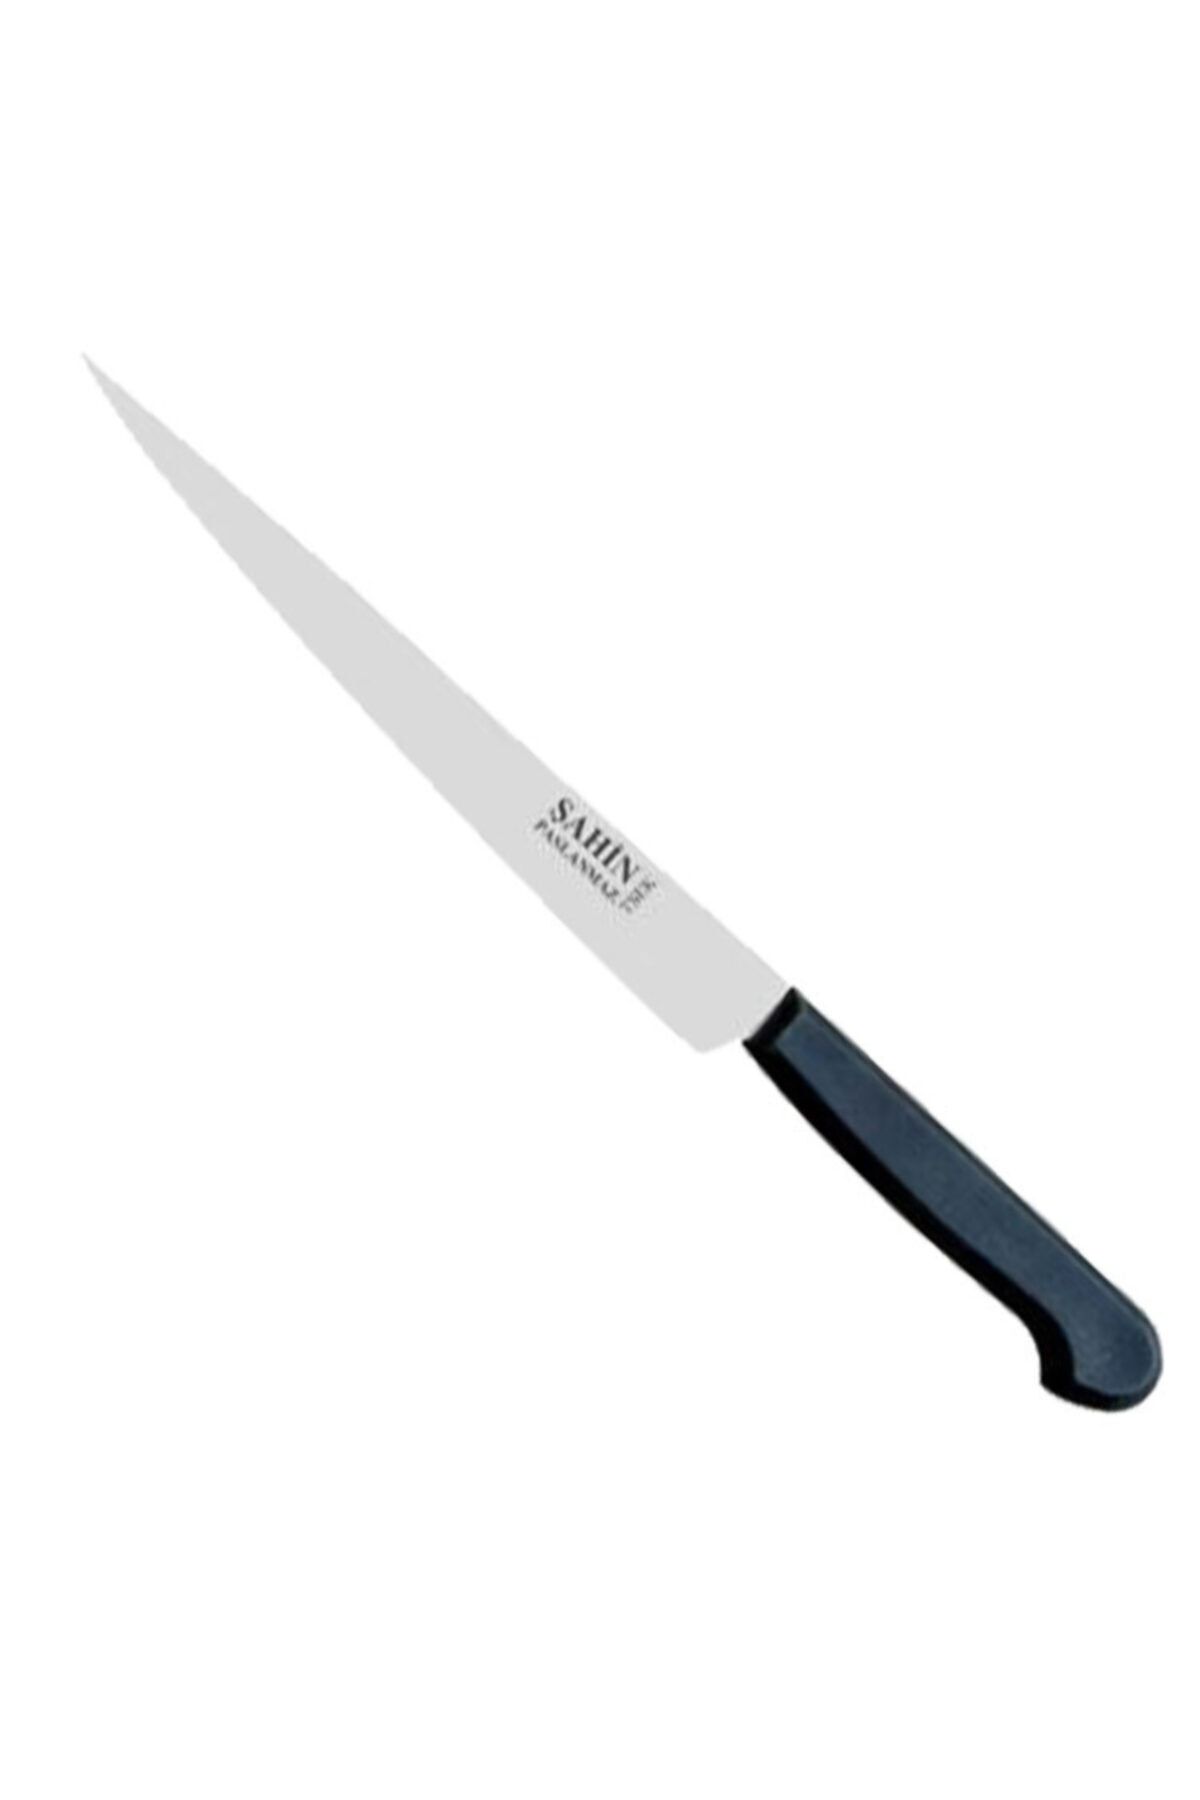 Şahin Bursa Küçük Peynir Bıçağı 15 Cm, Plastik Sap